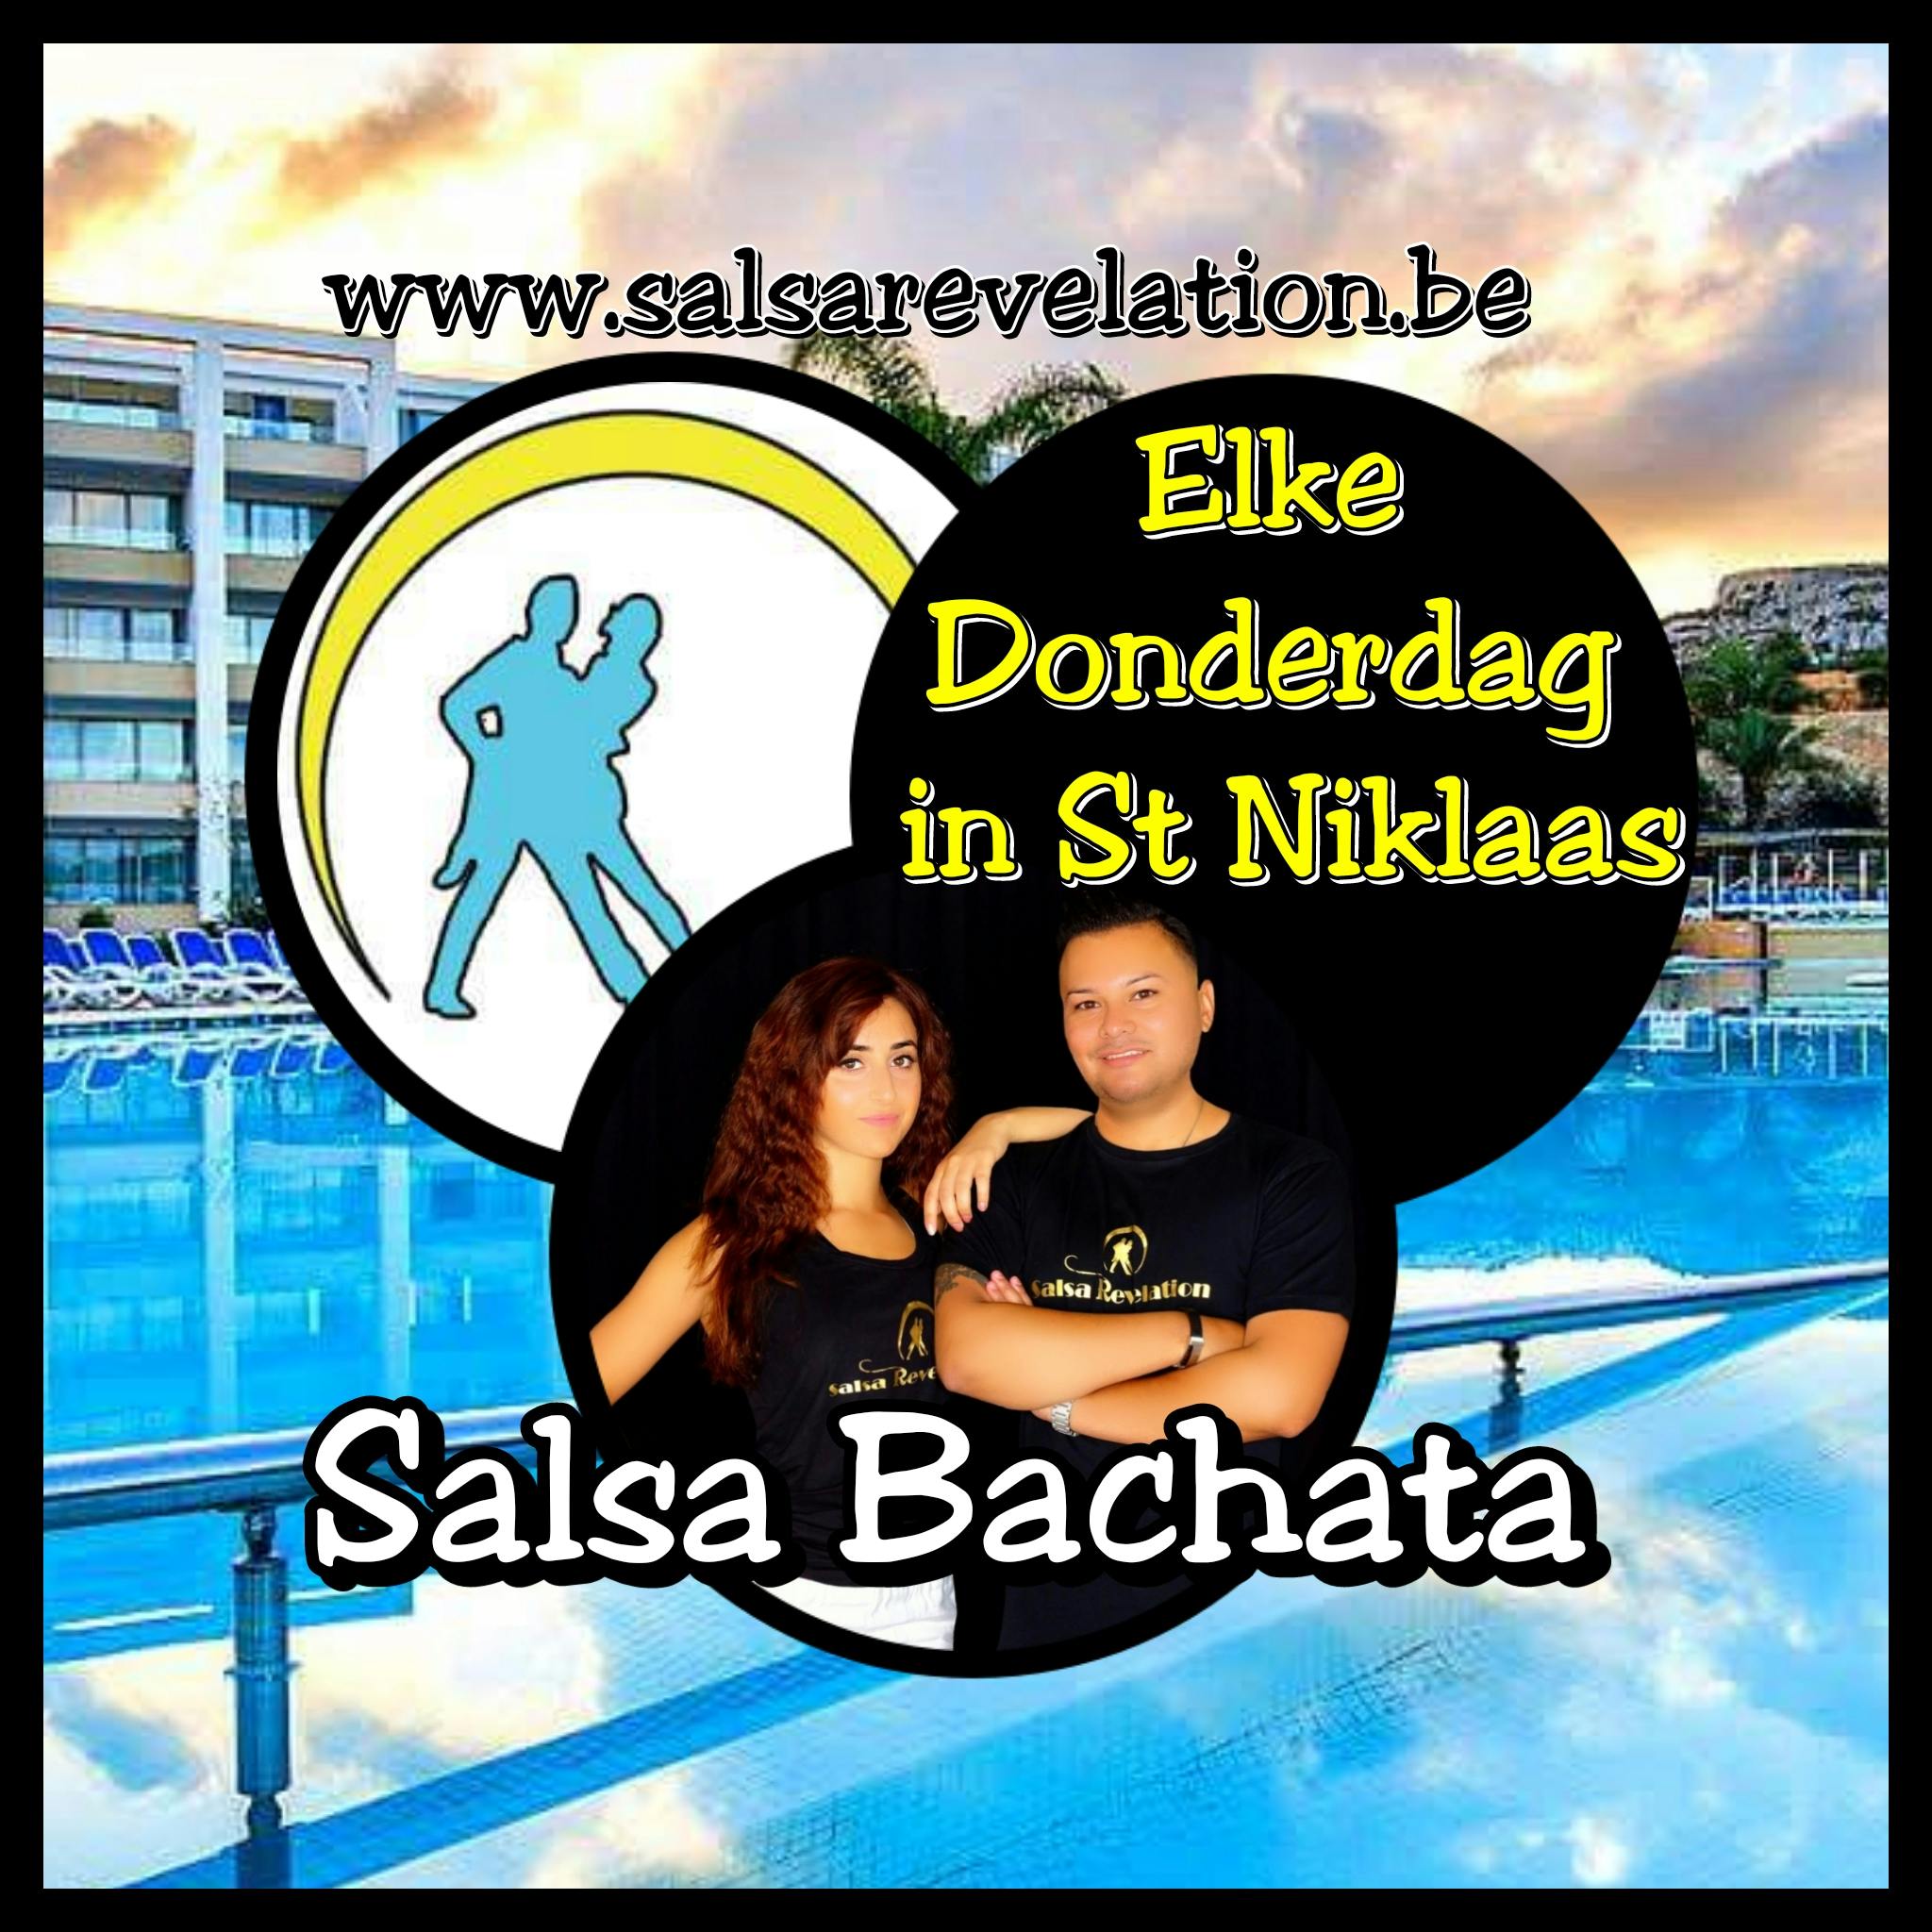 Salsa & Bachata voor iedereen